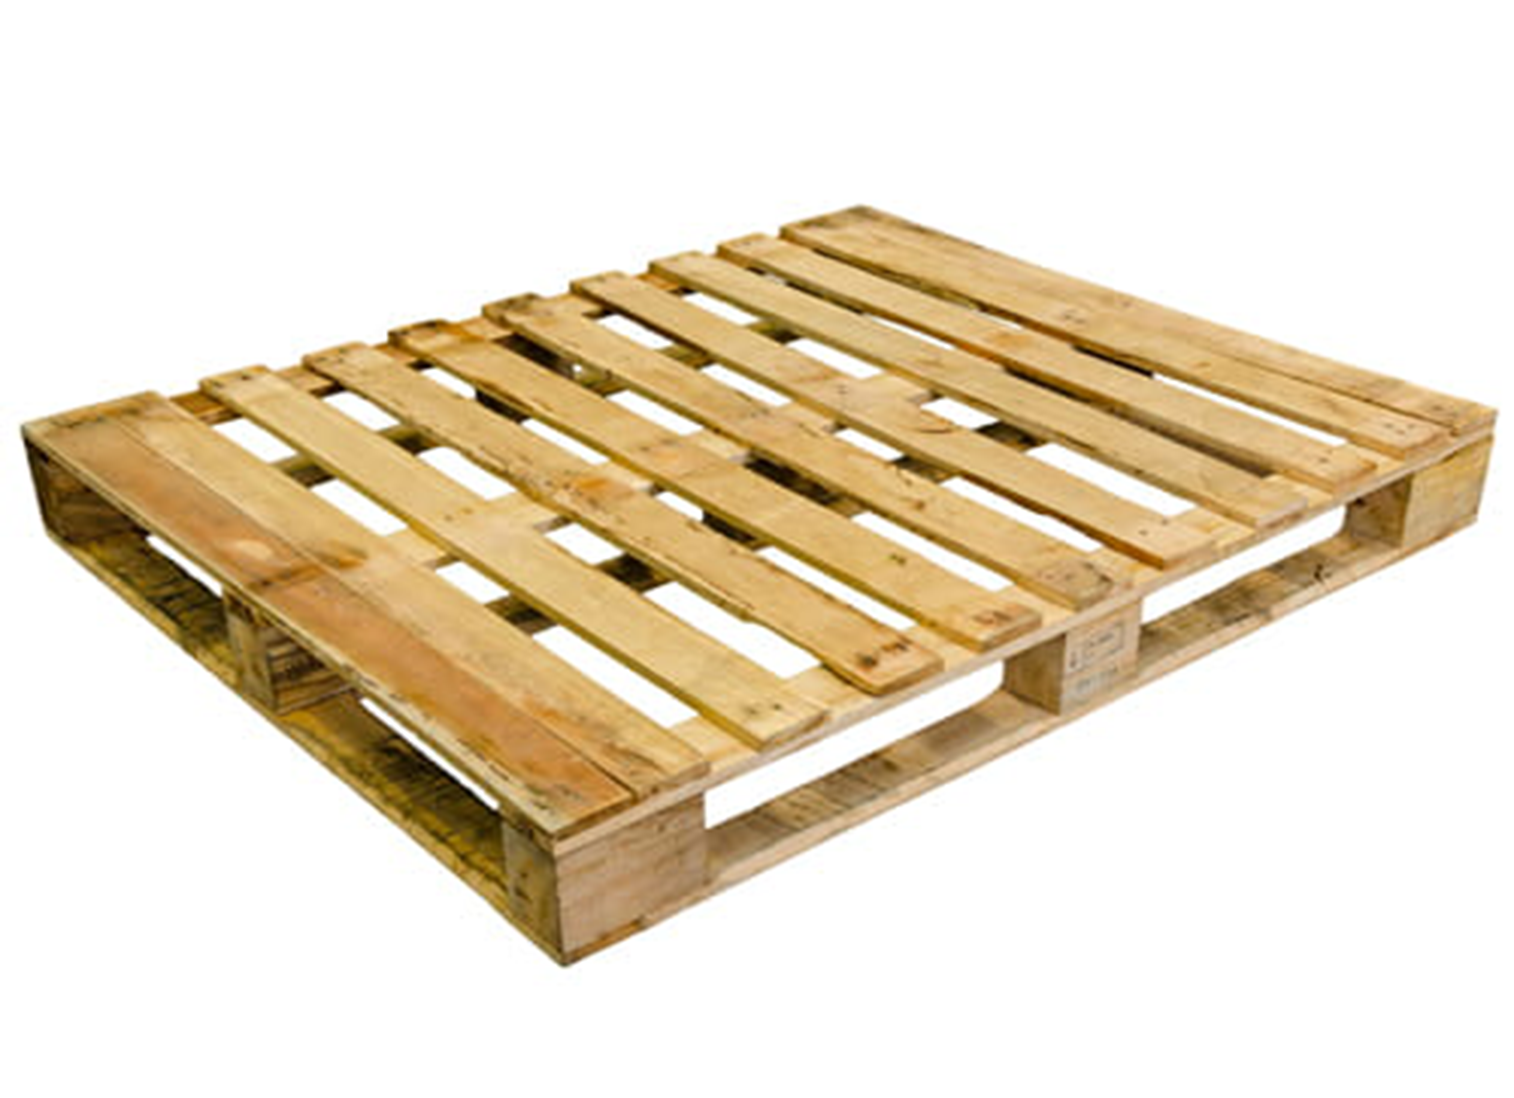 پالت چوبی فروشی در اندیشه